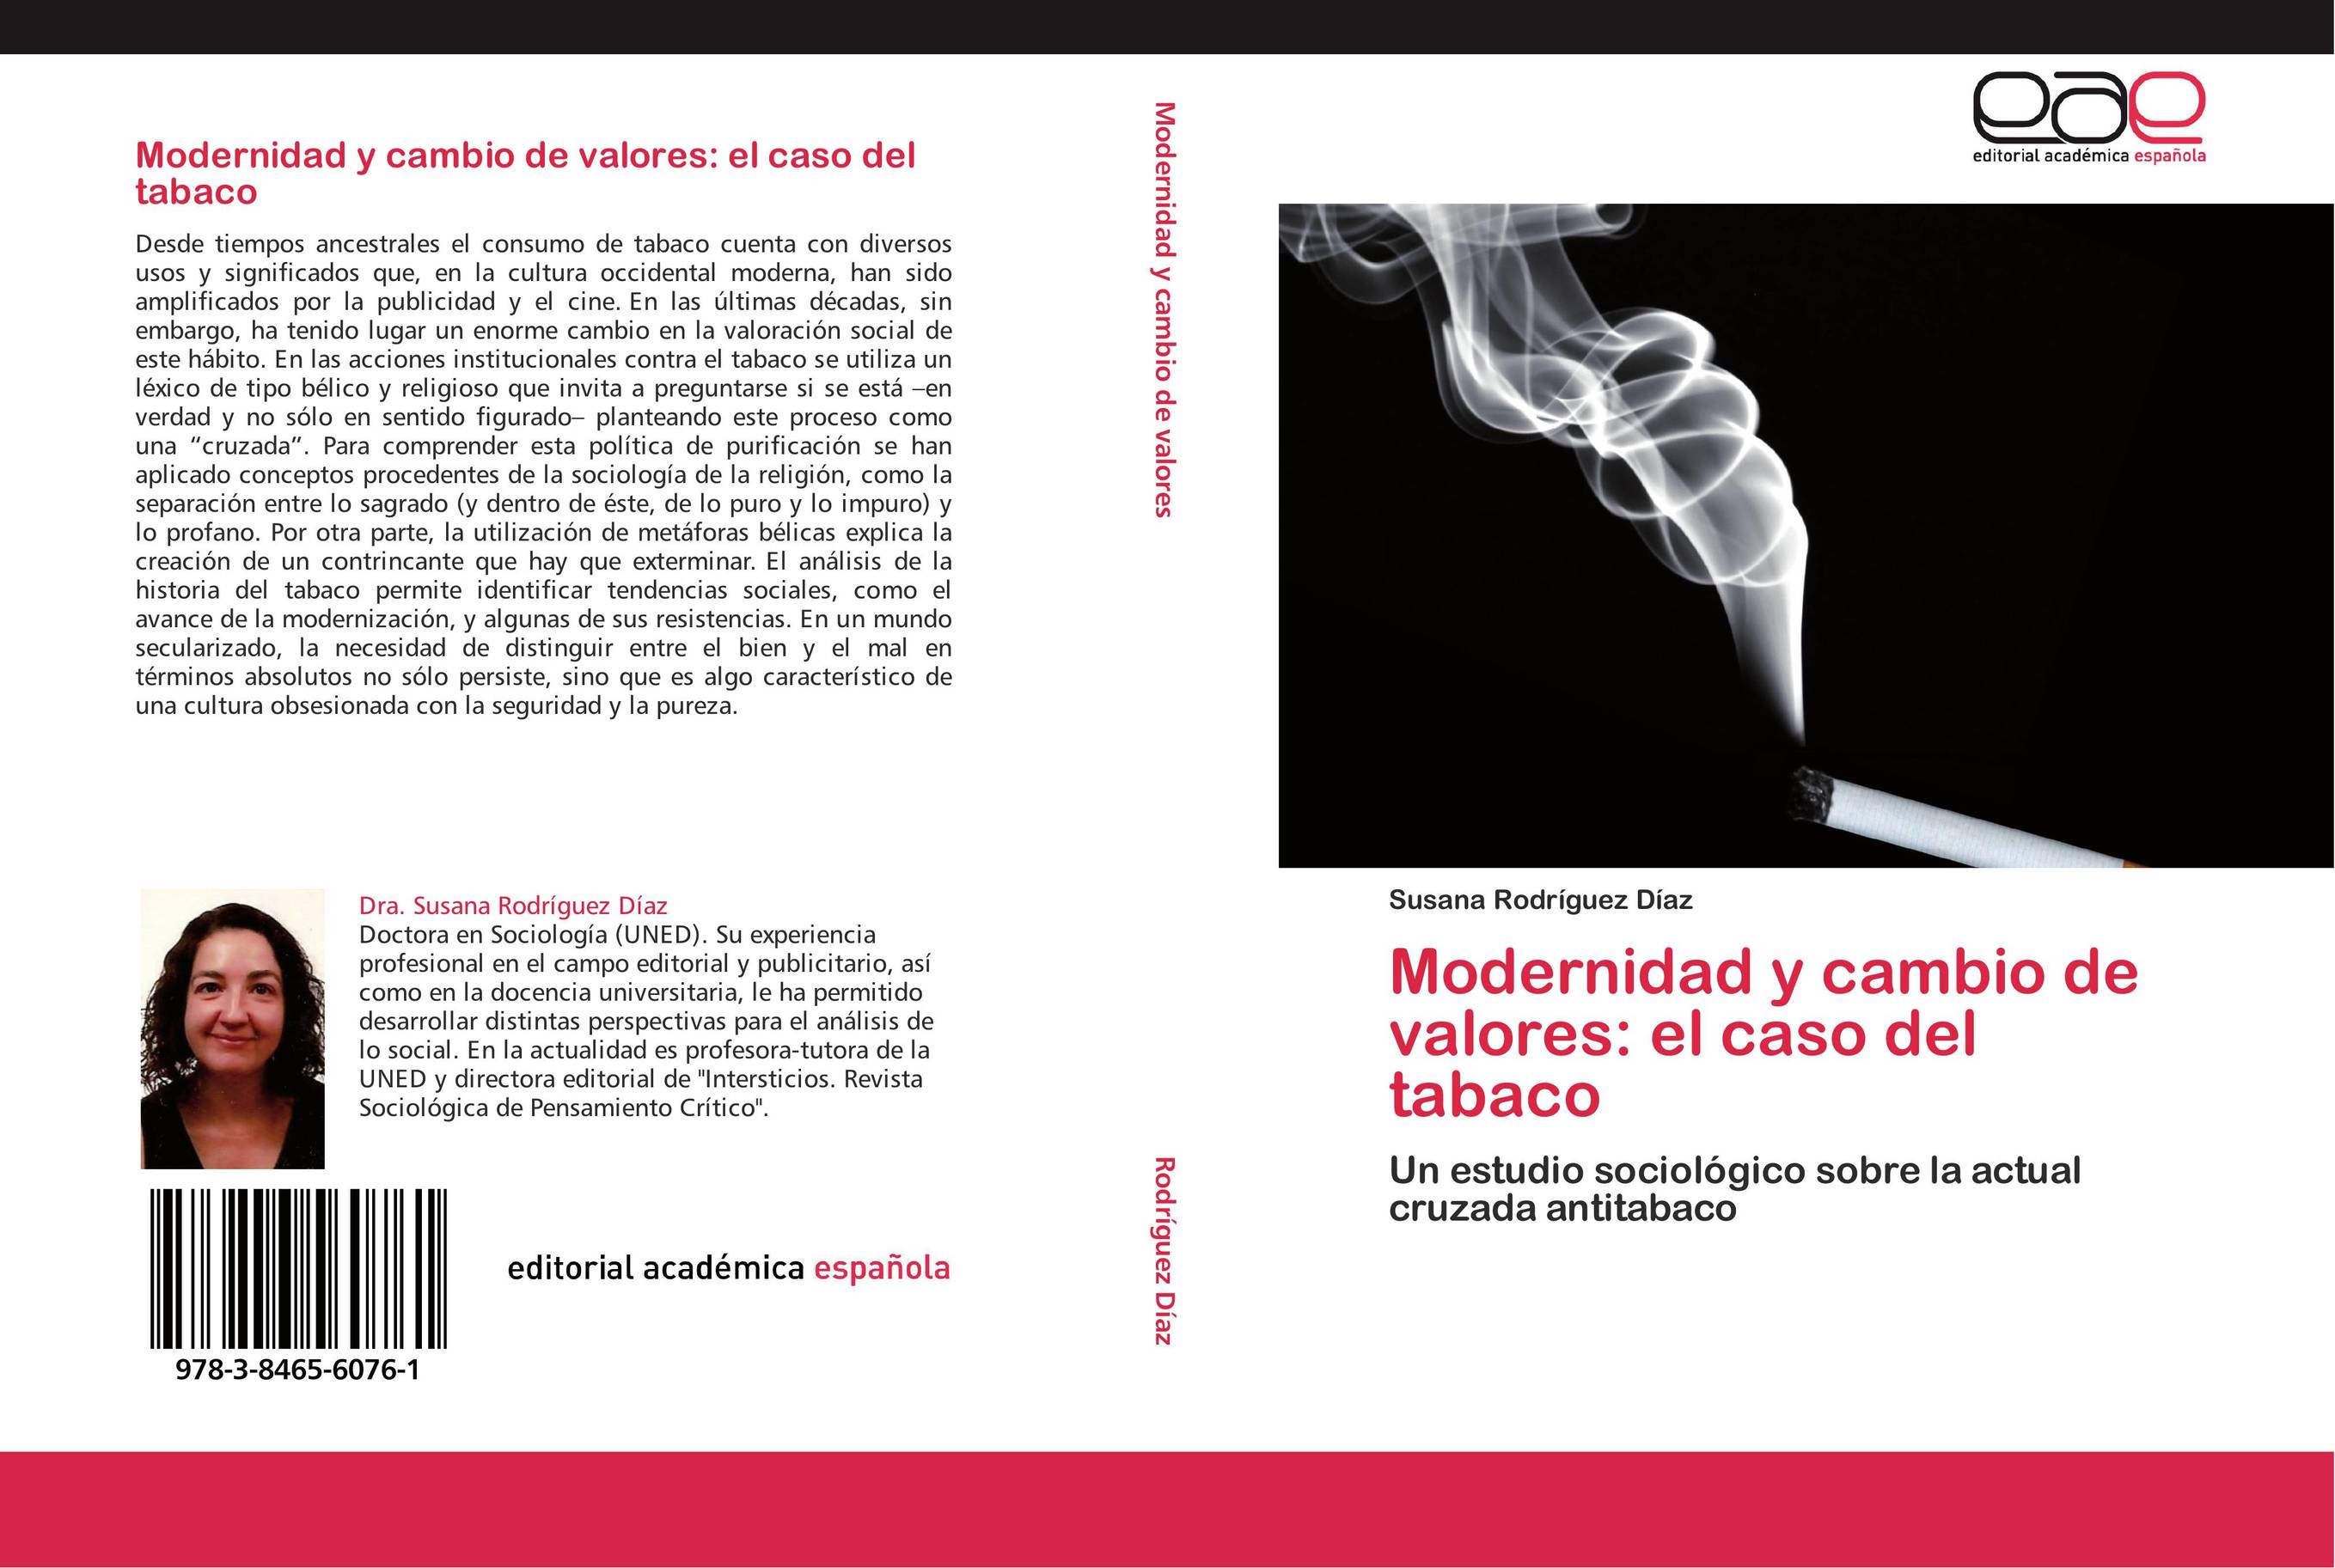 Modernidad y cambio de valores: el caso del tabaco